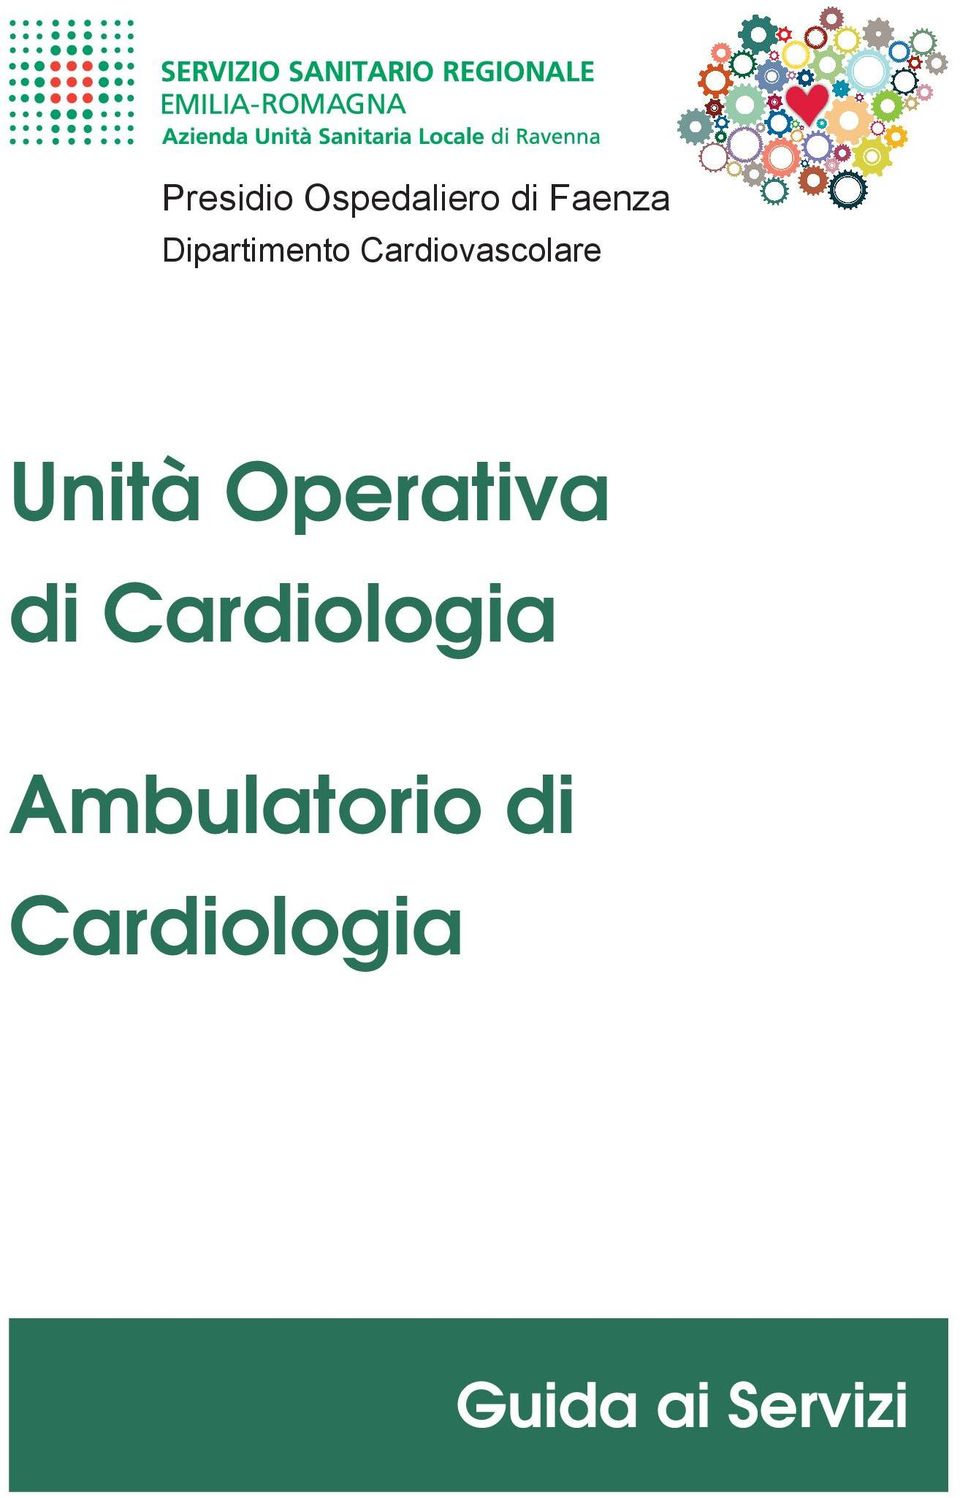 Unità Operativa di Cardiologia